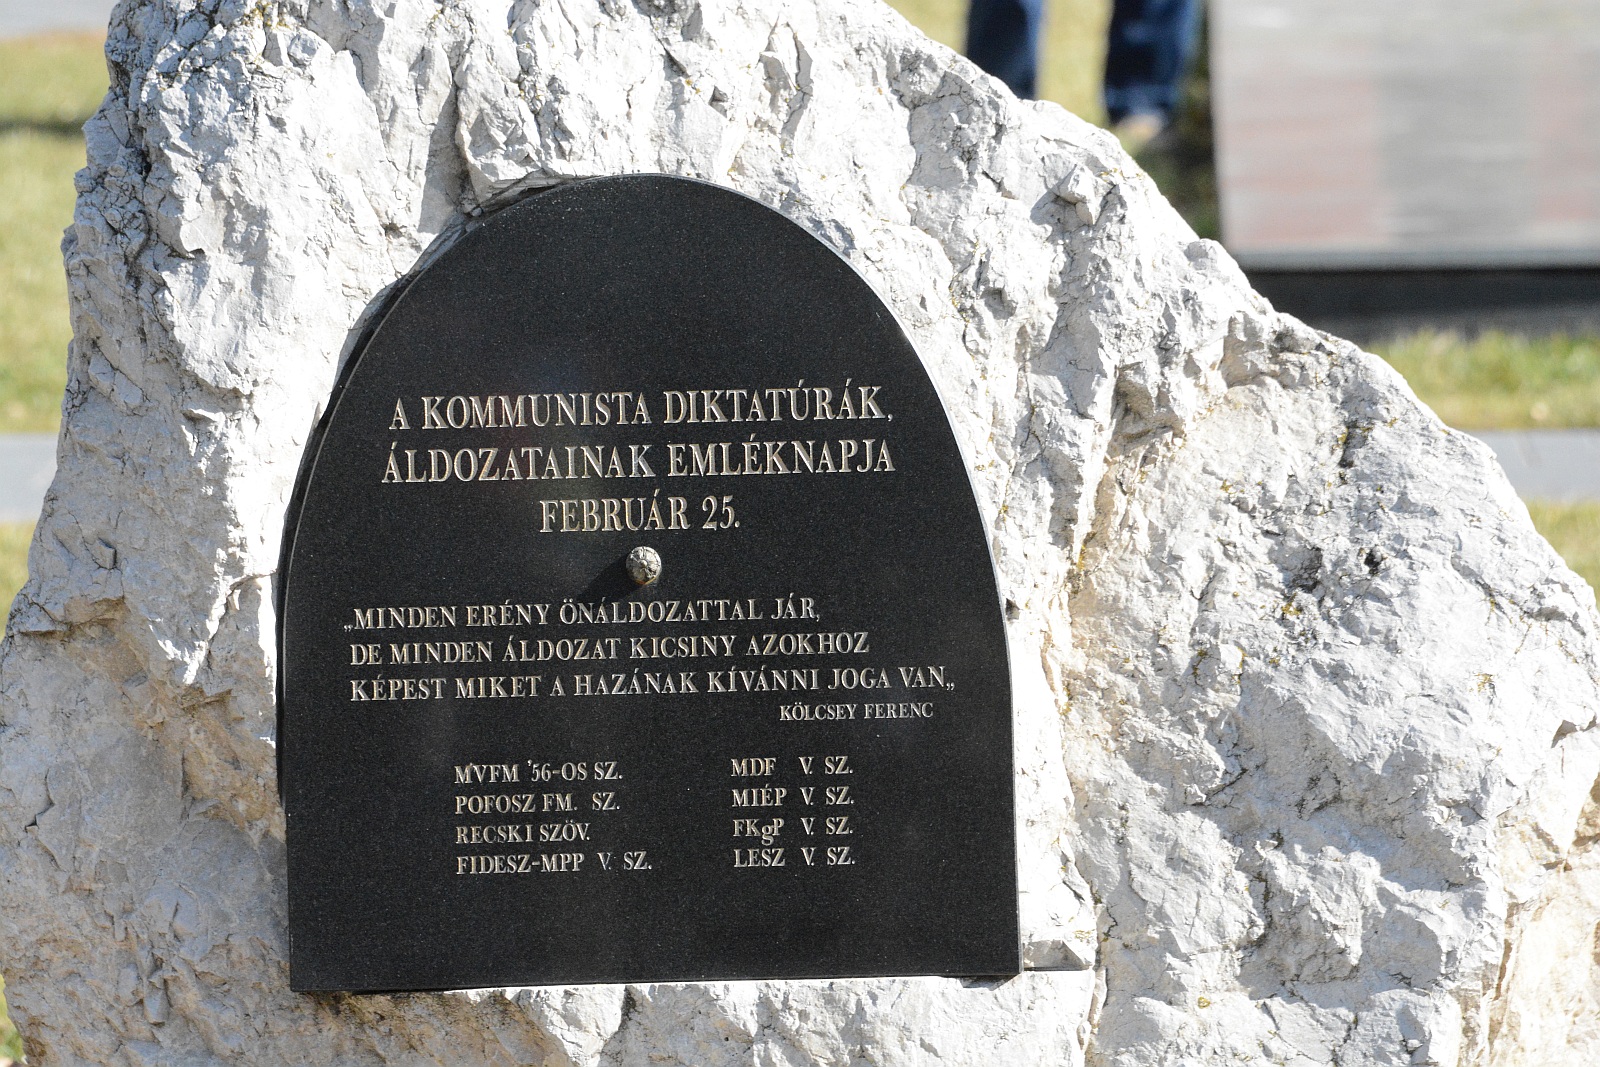 Megemlékezések a kommunizmus áldozatainak tiszteletére Székesfehérváron